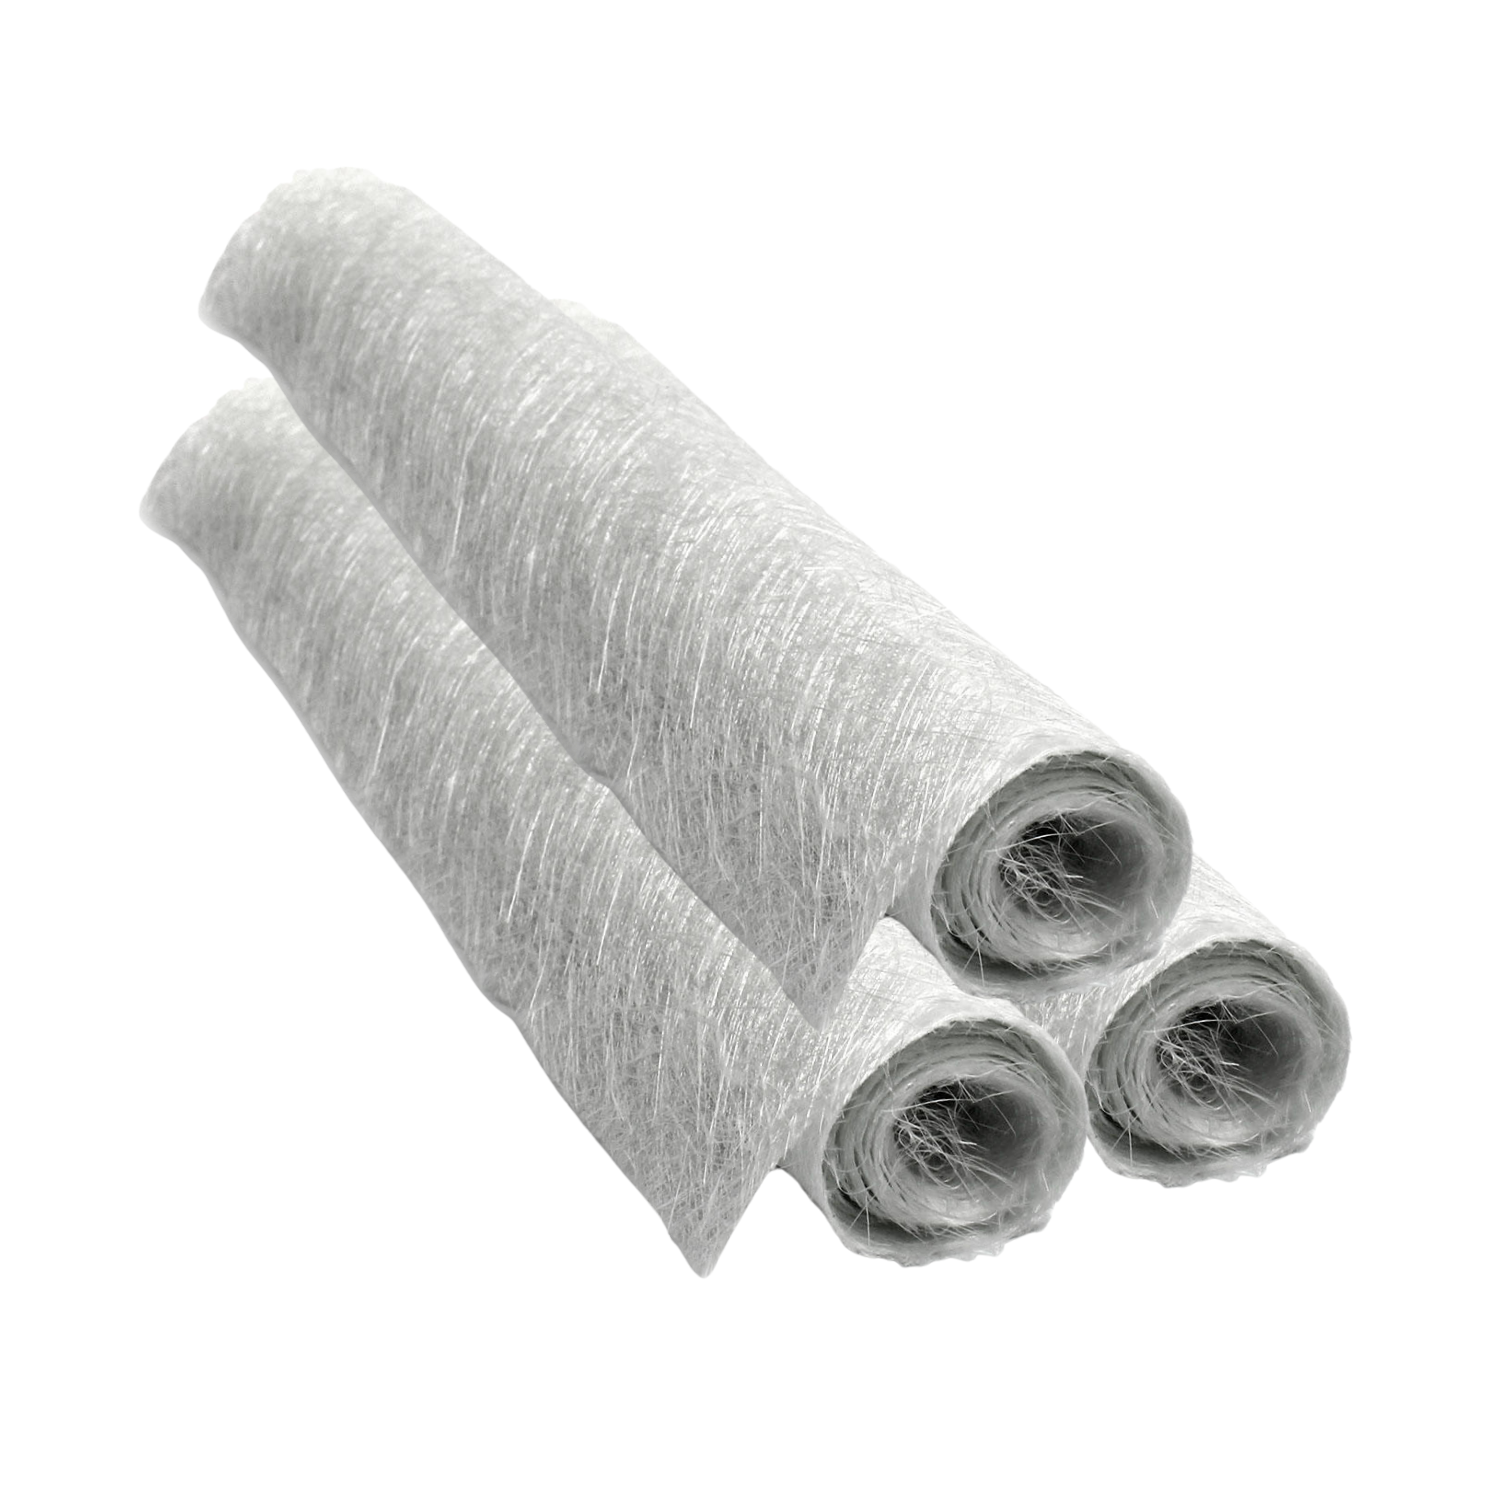 fibreglass matting supplies